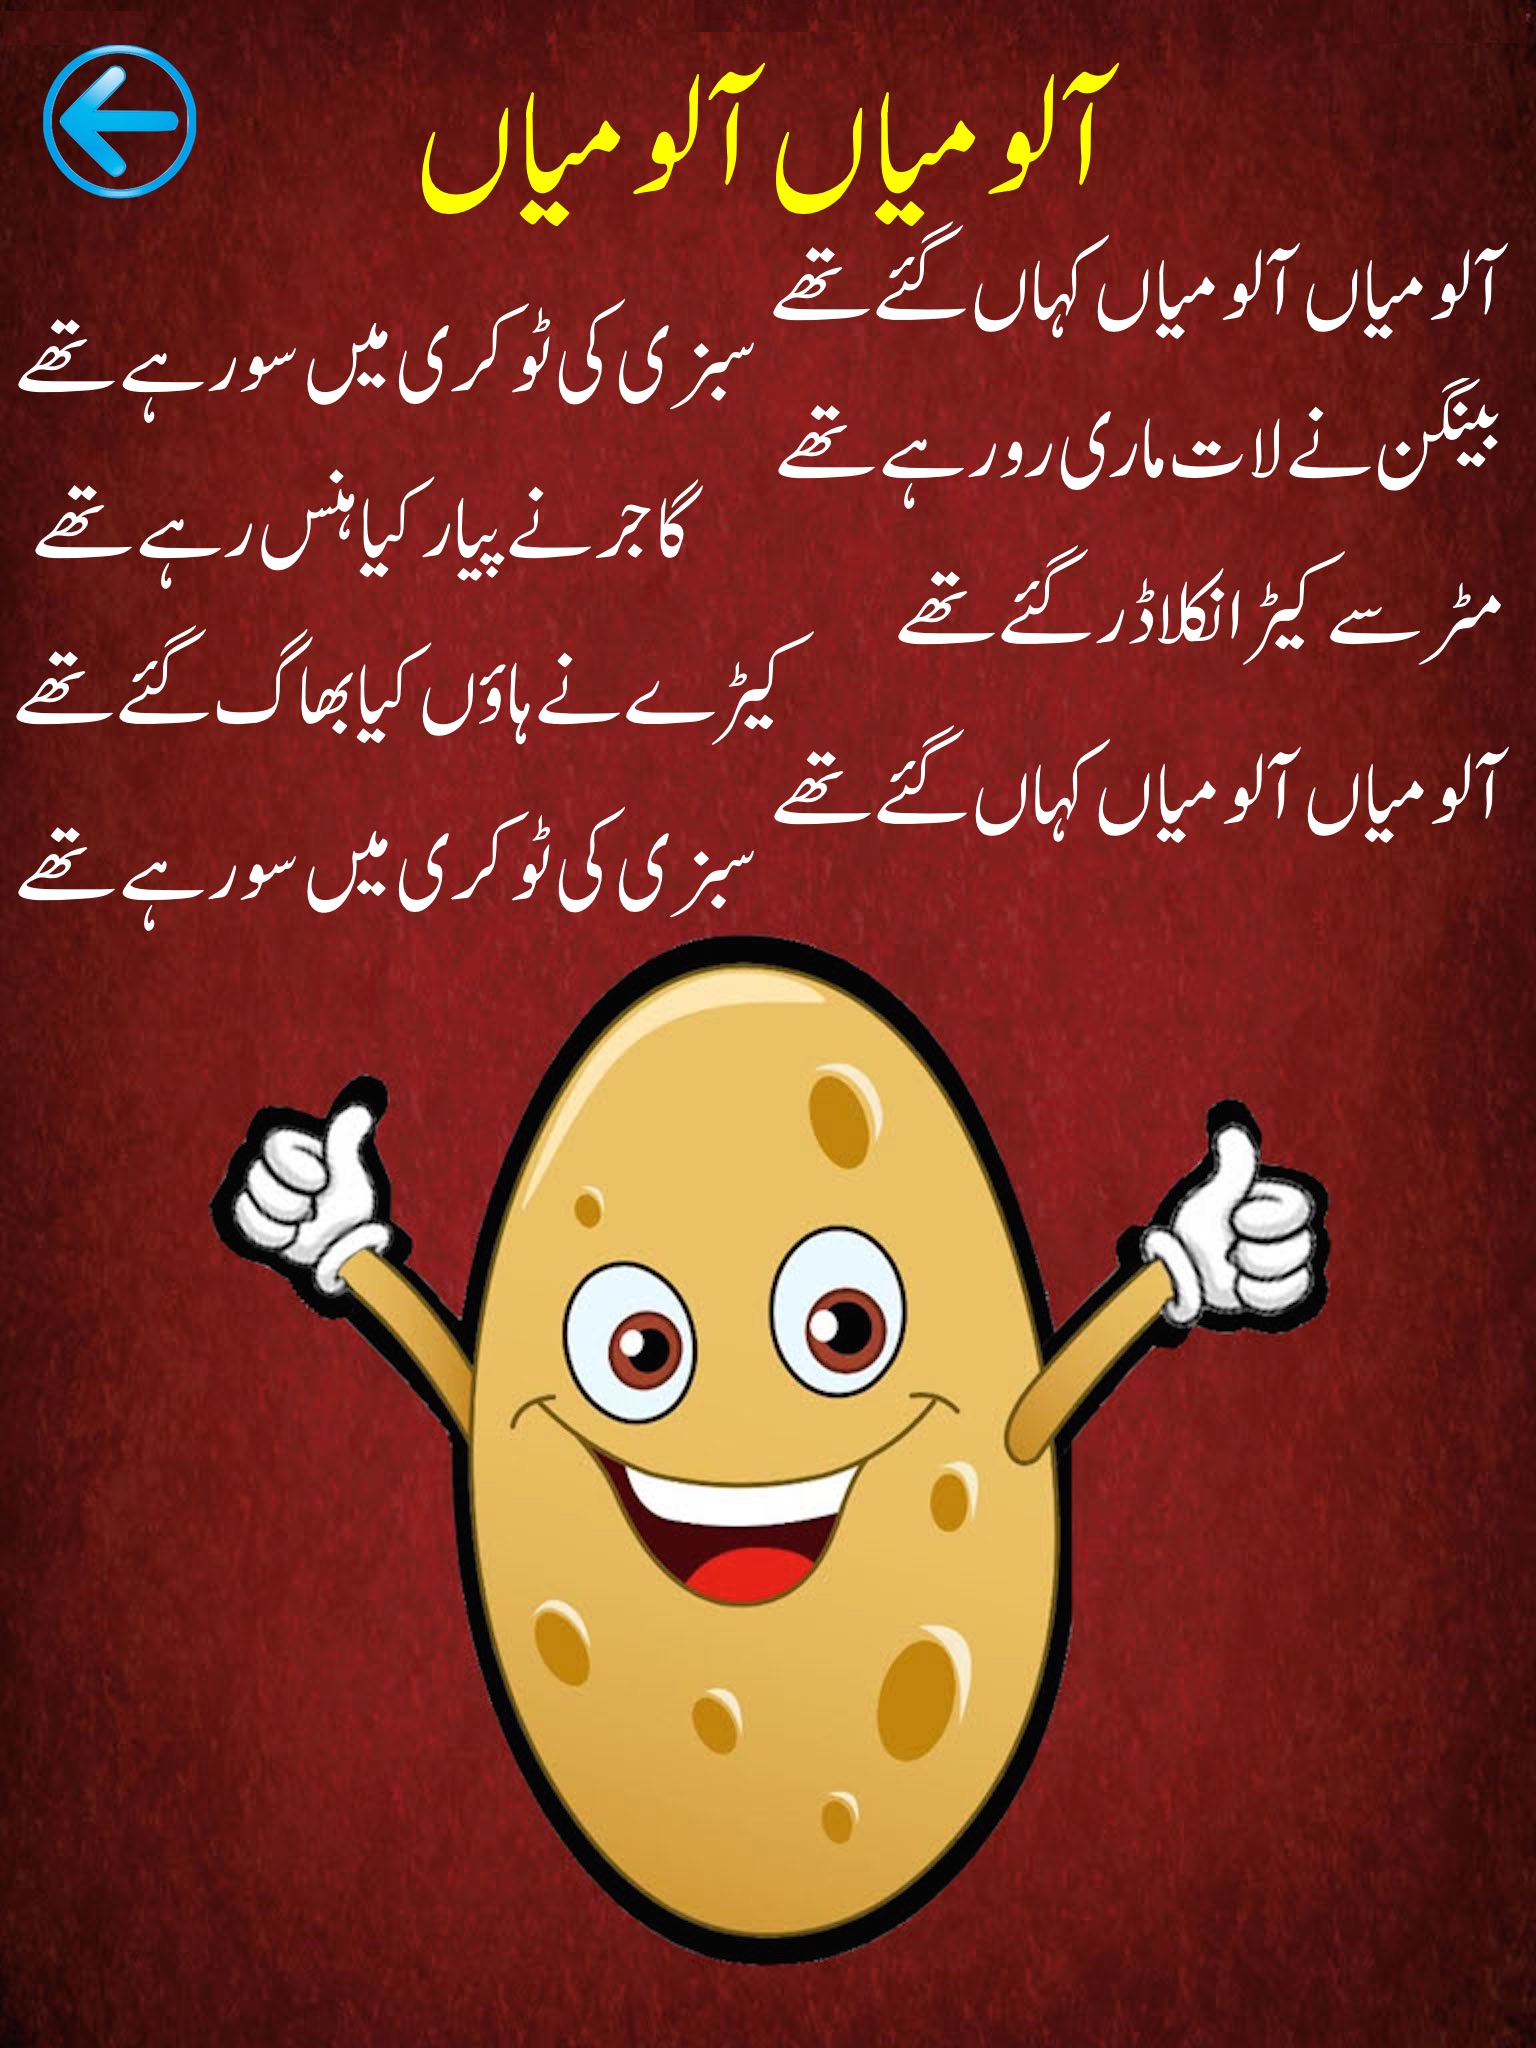 My Rhymes Pakistan urdu poetry screenshot 2